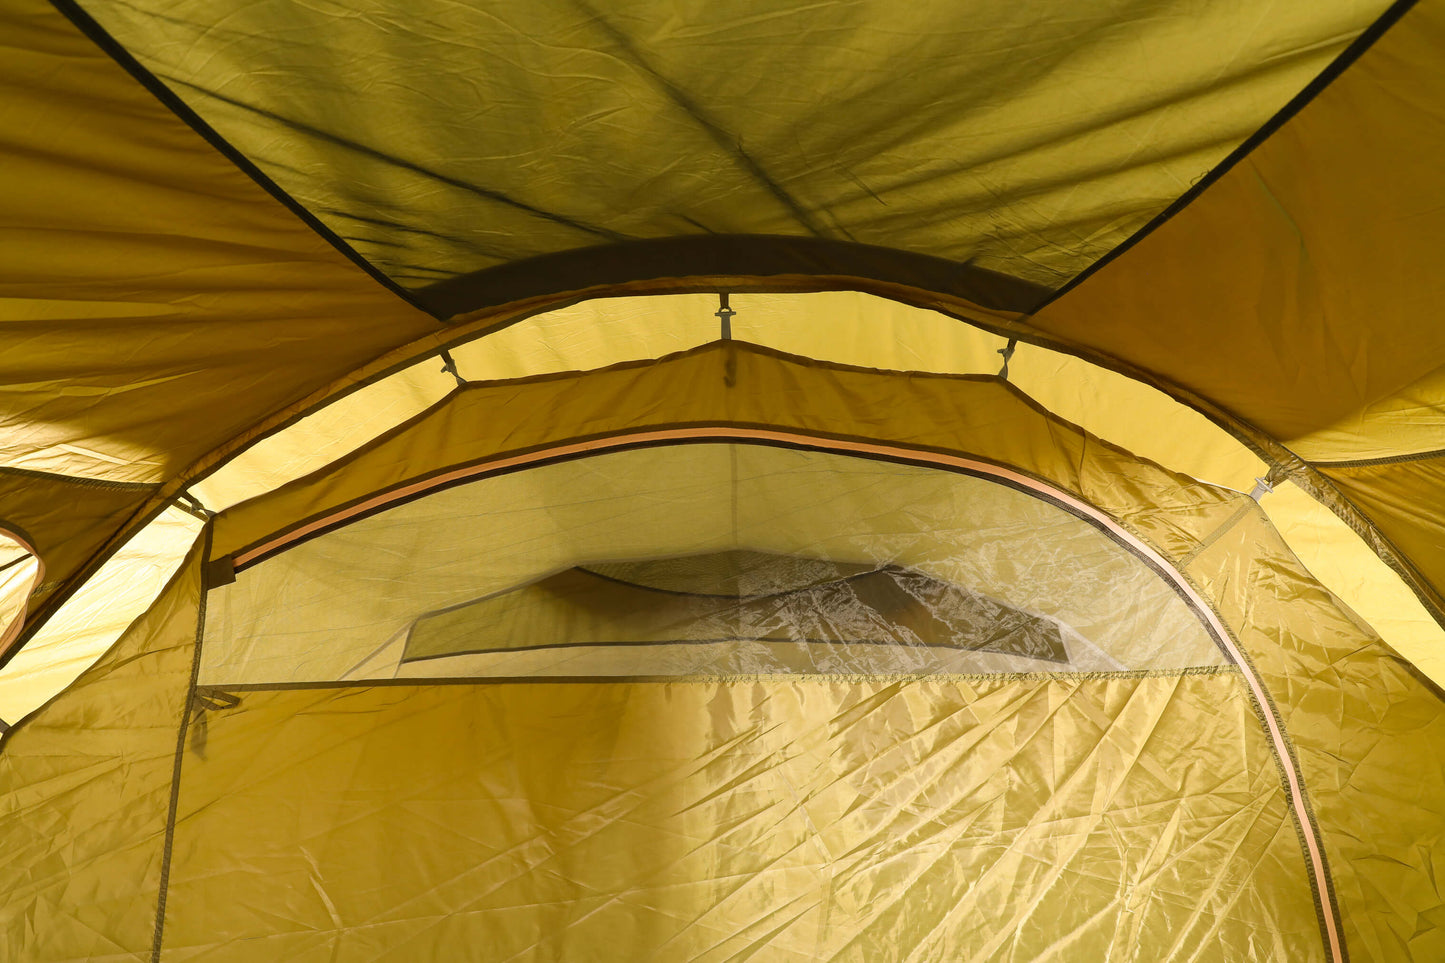 5 personers premium telt